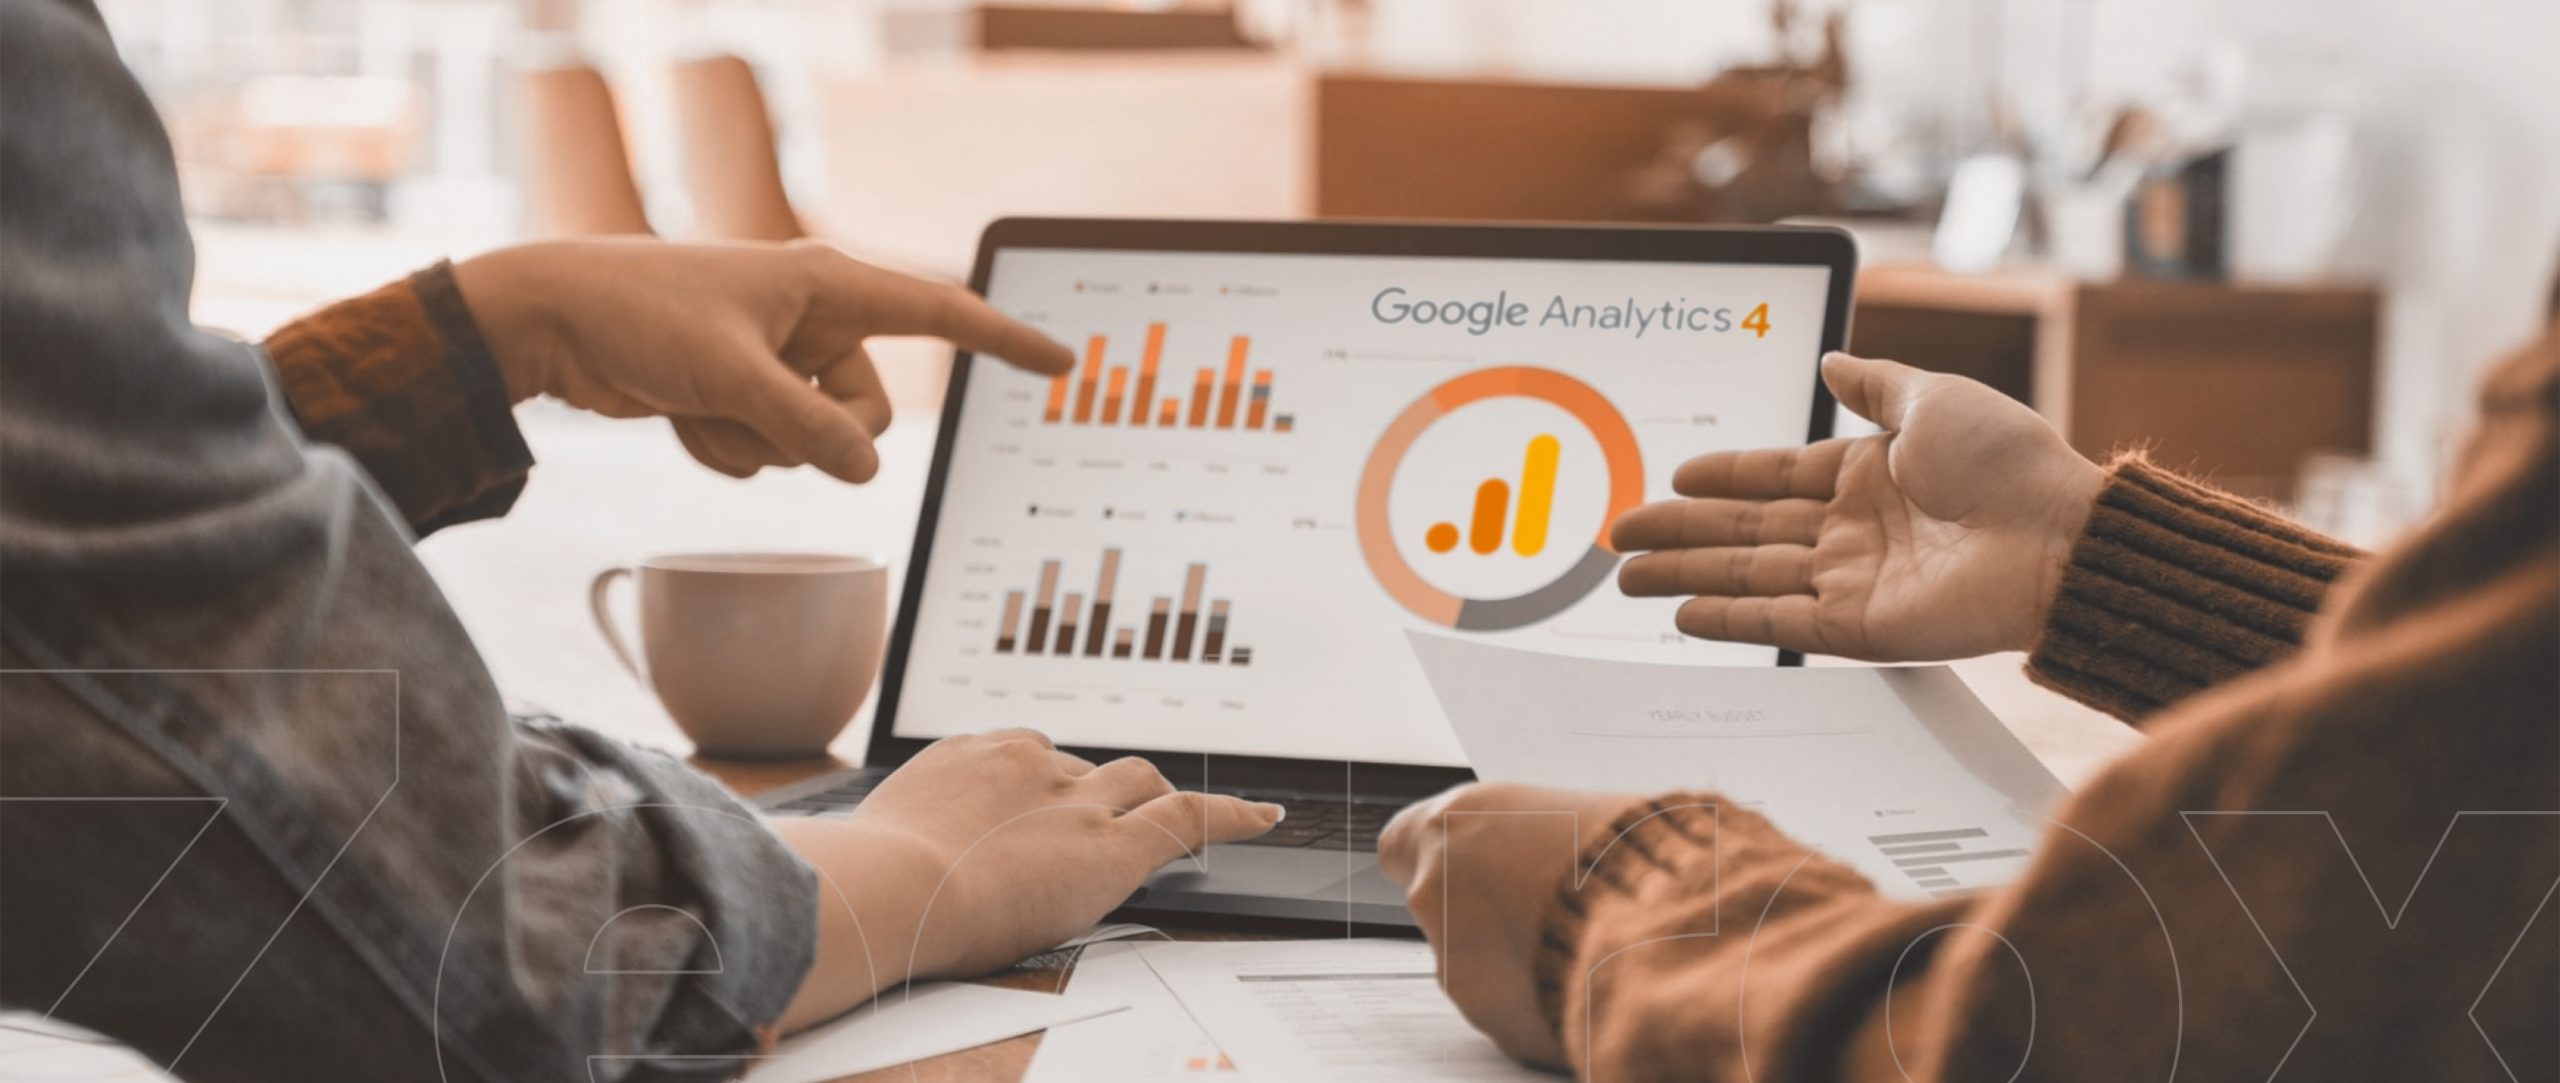 De voordelen van Google Analytics 4 voor e-commercebedrijven verkennen